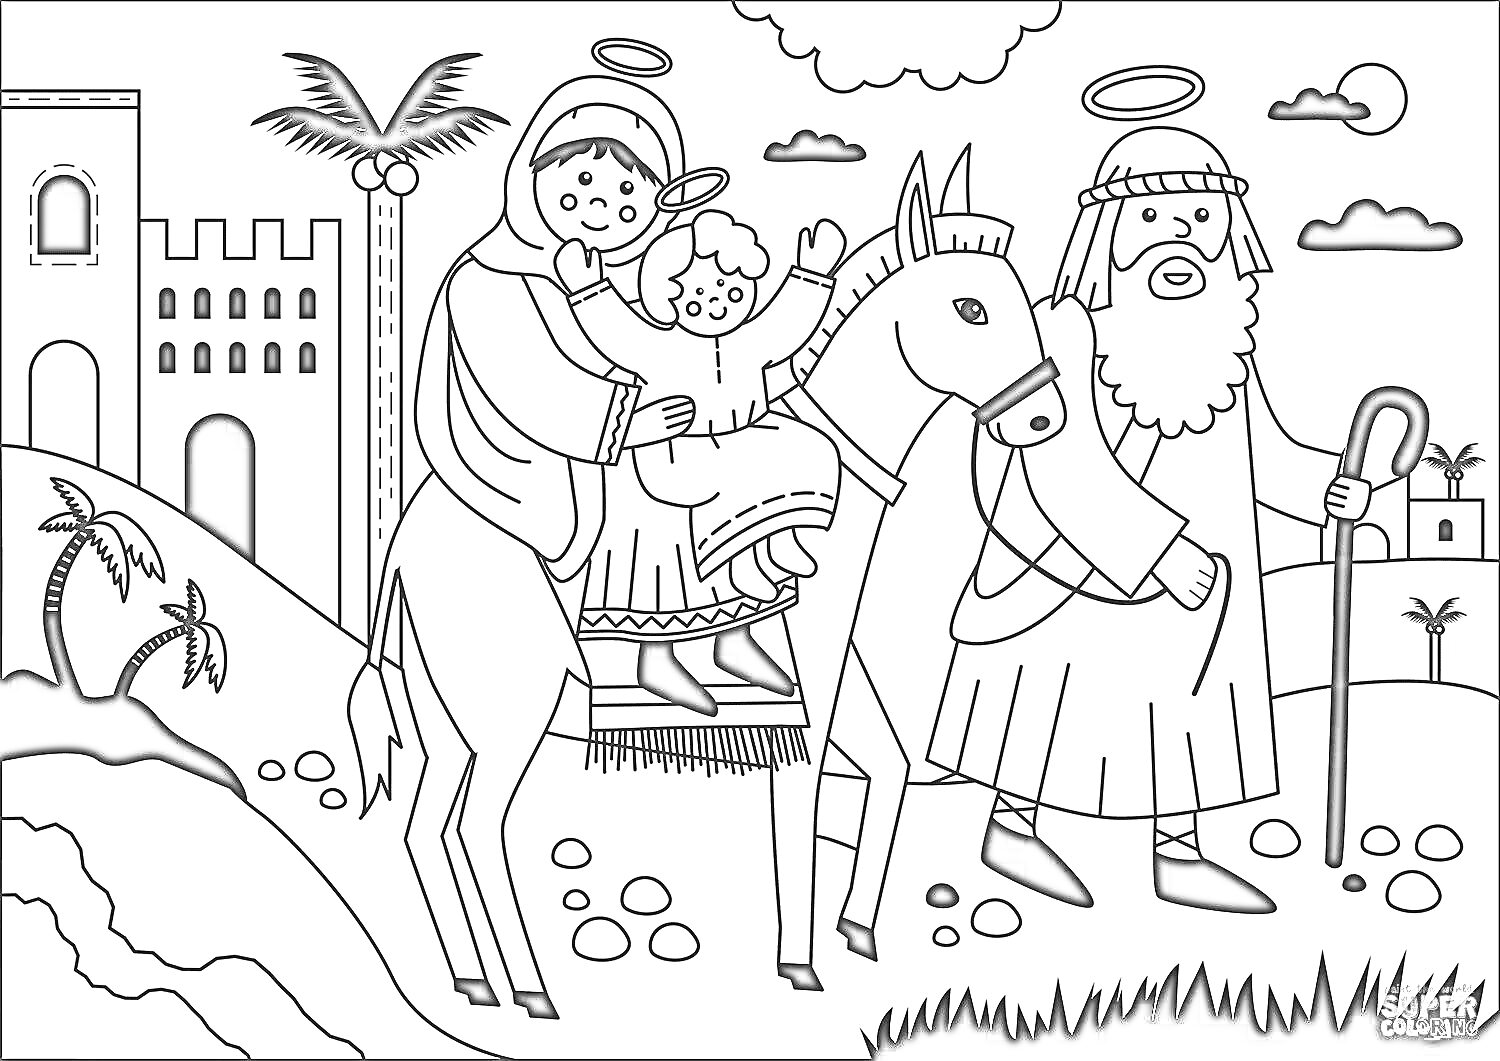 Святое семейство на осле, Иосиф с посохом, пальмы, здания, холмы, облака